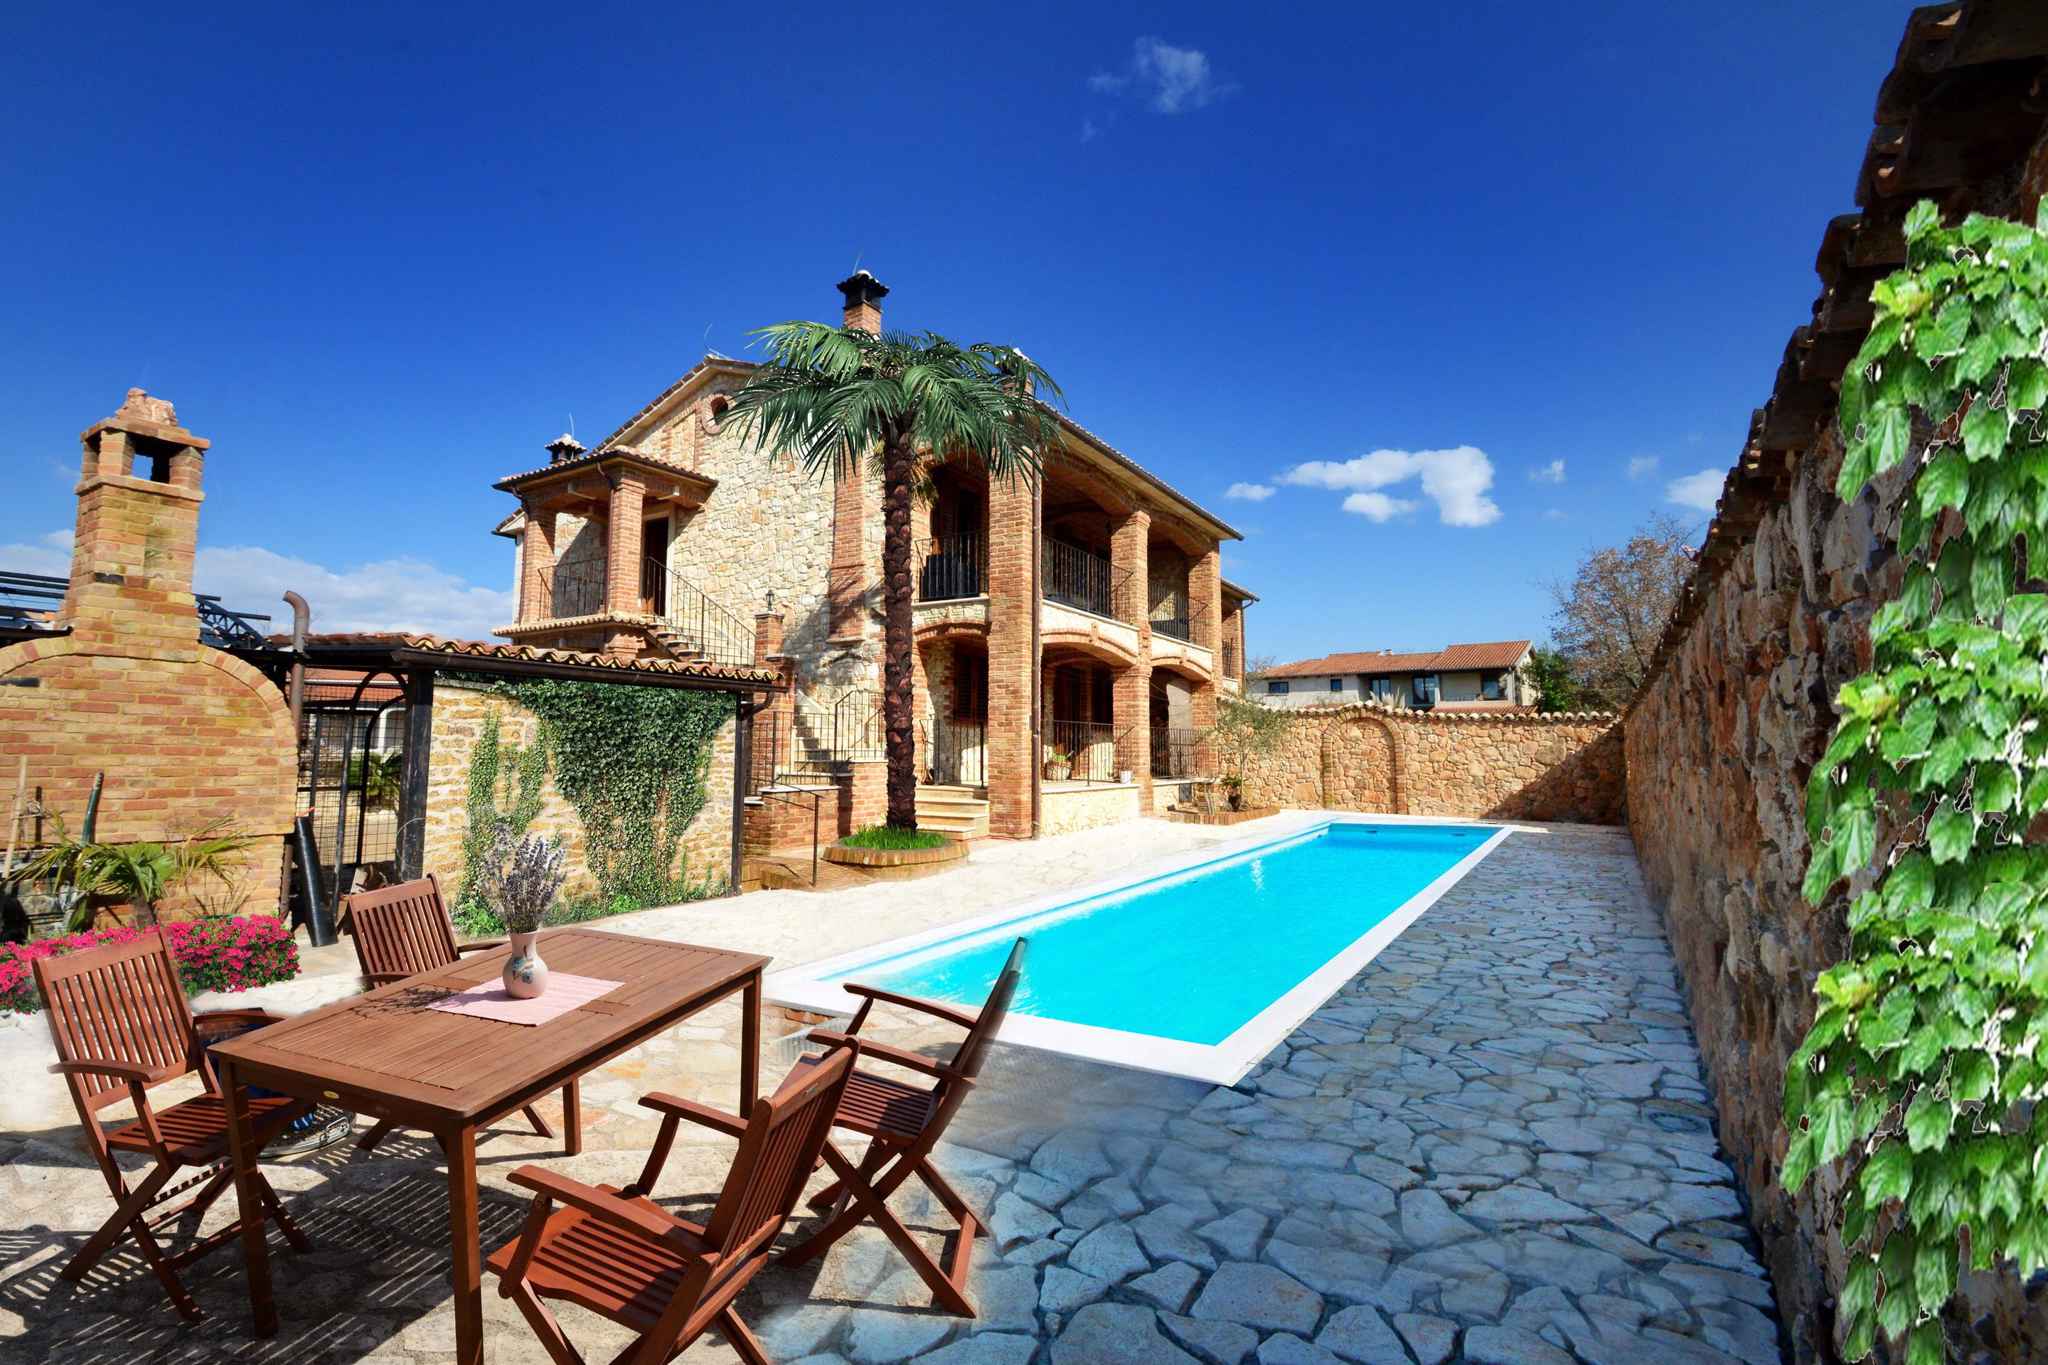 Ferienwohnung mit Pool und im toskanischen Stil  in Istrien